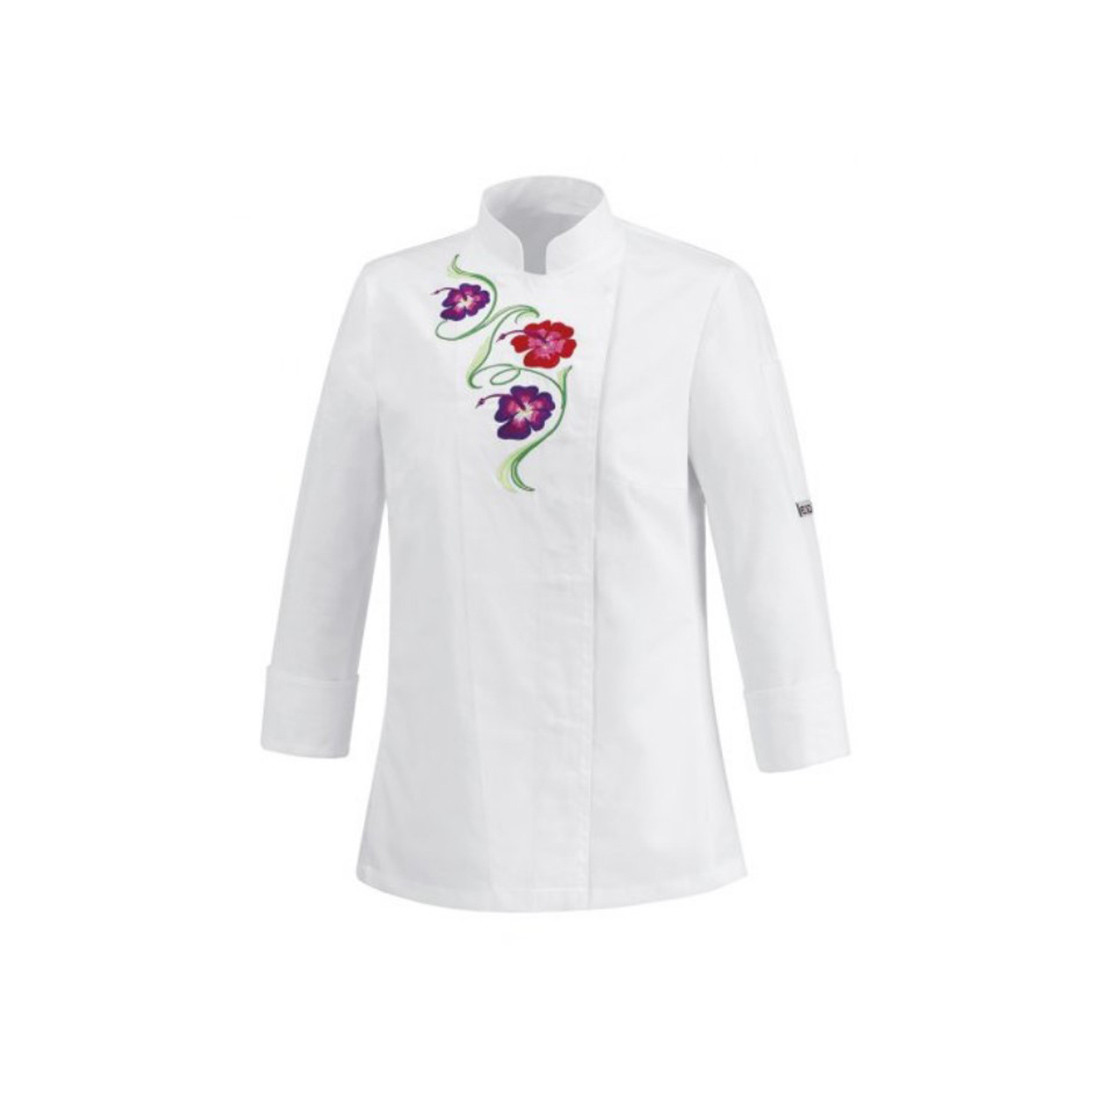 Chaqueta chef para mujer Flowers, 100% algodón - Ropa de protección